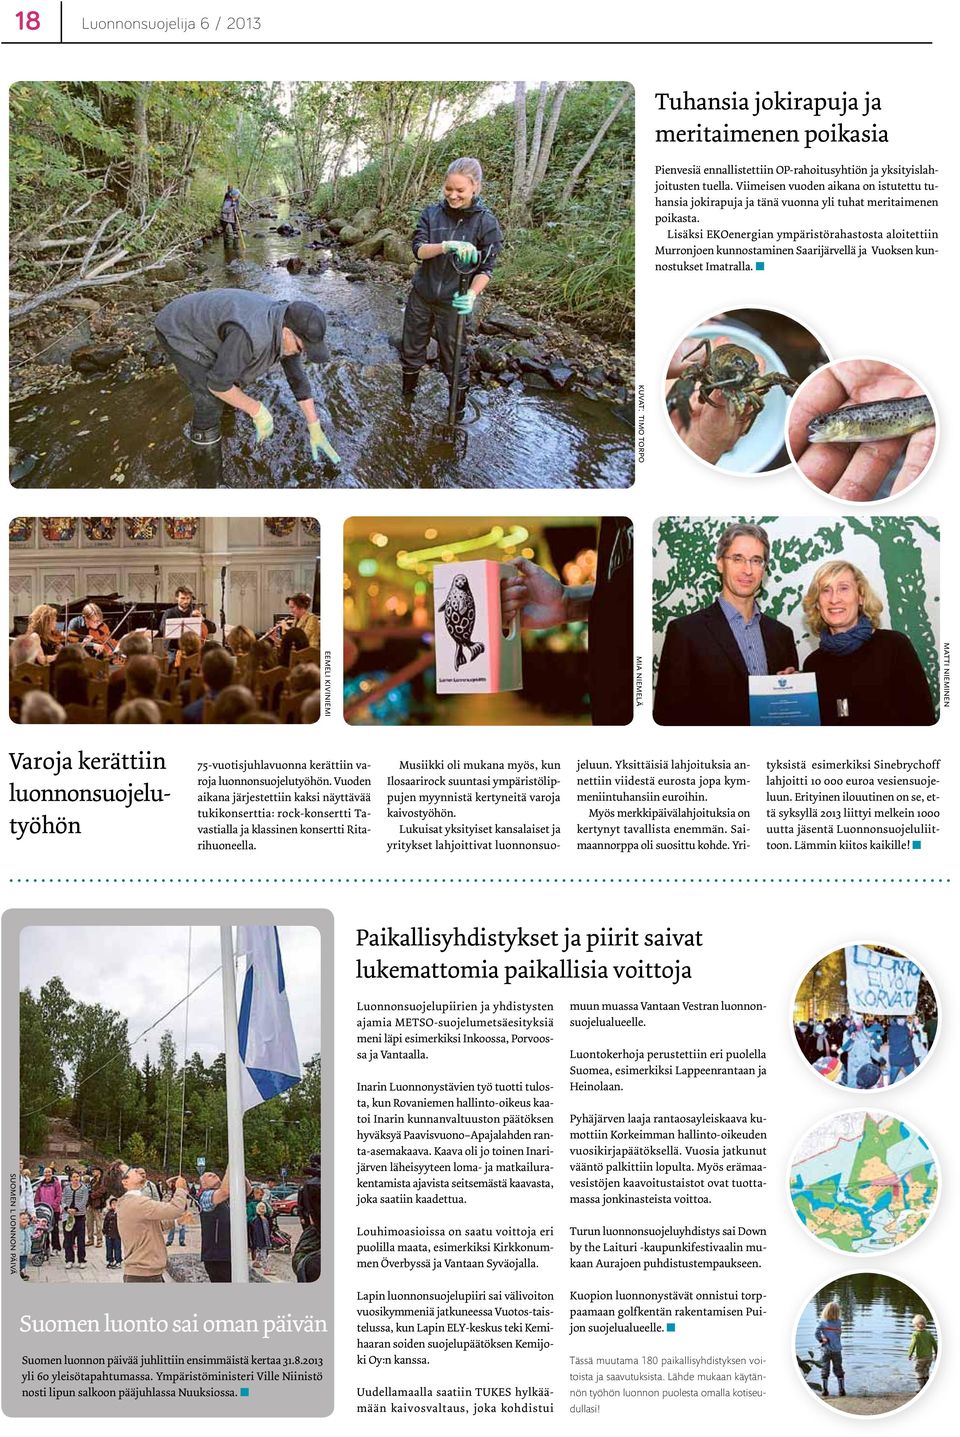 Lisäksi EKOenergian ympäristörahastosta aloitettiin Murronjoen kunnostaminen Saarijärvellä ja Vuoksen kunnostukset Imatralla.